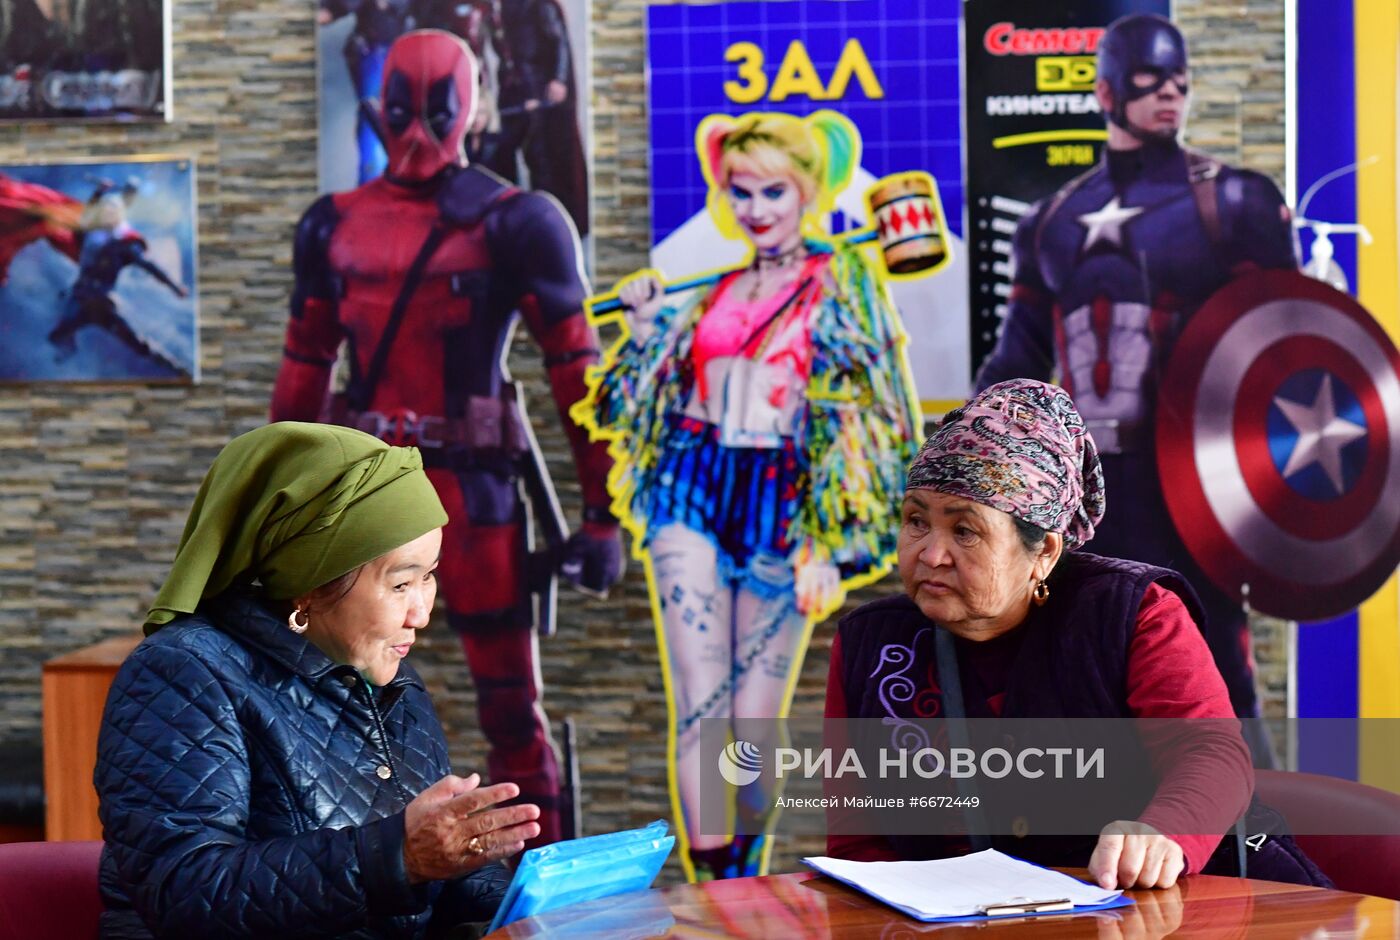 Дни российского кино в Киргизии